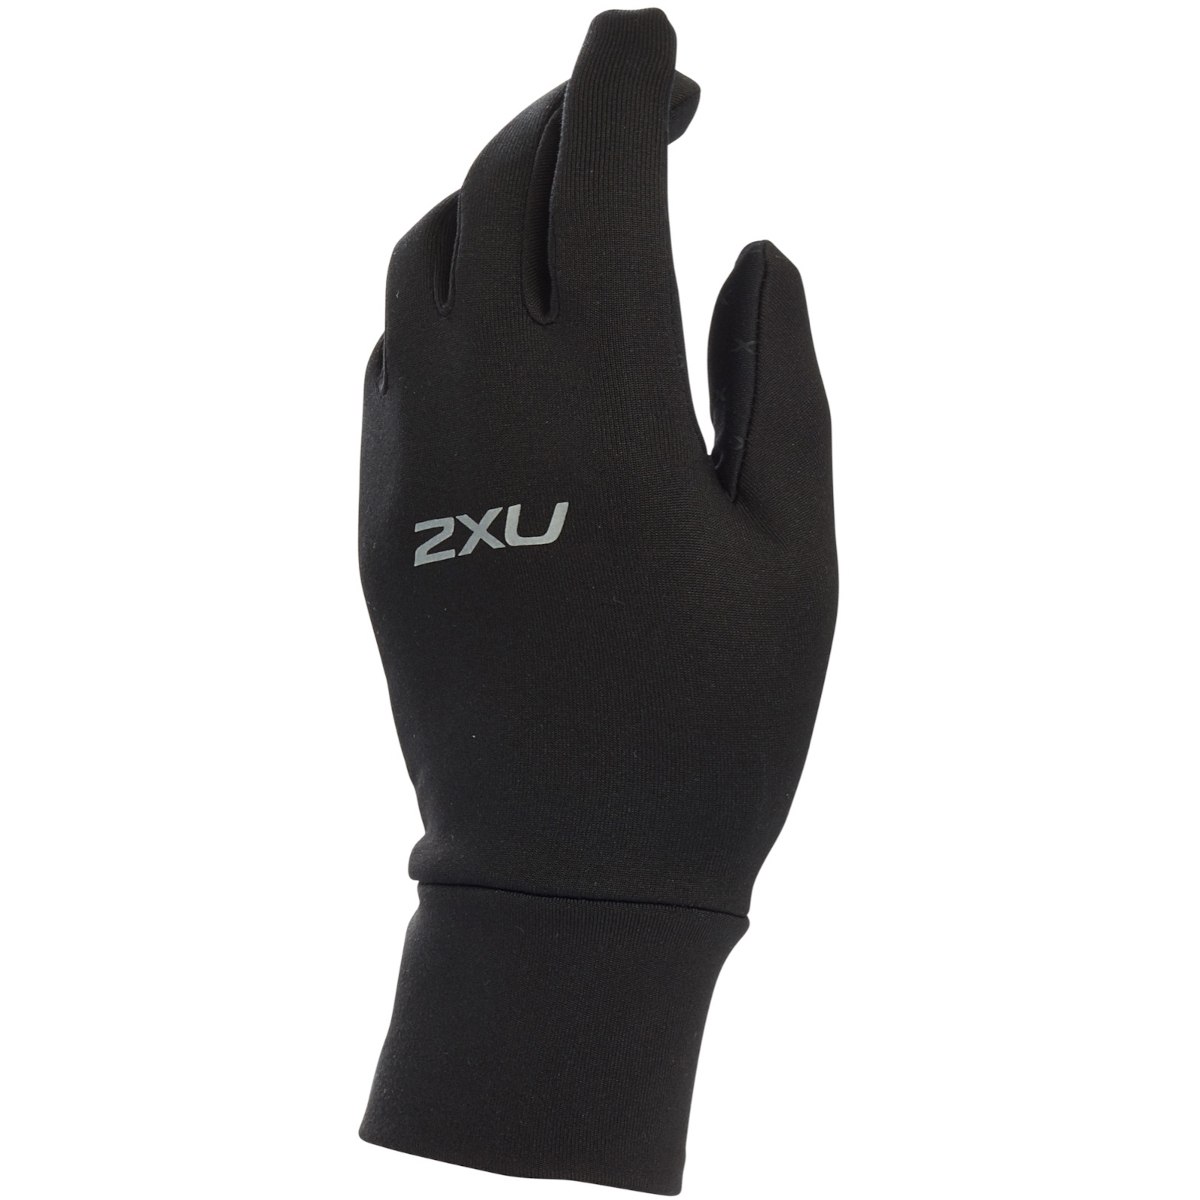 Produktbild von 2XU Run Vollfinger Handschuhe - black/silver